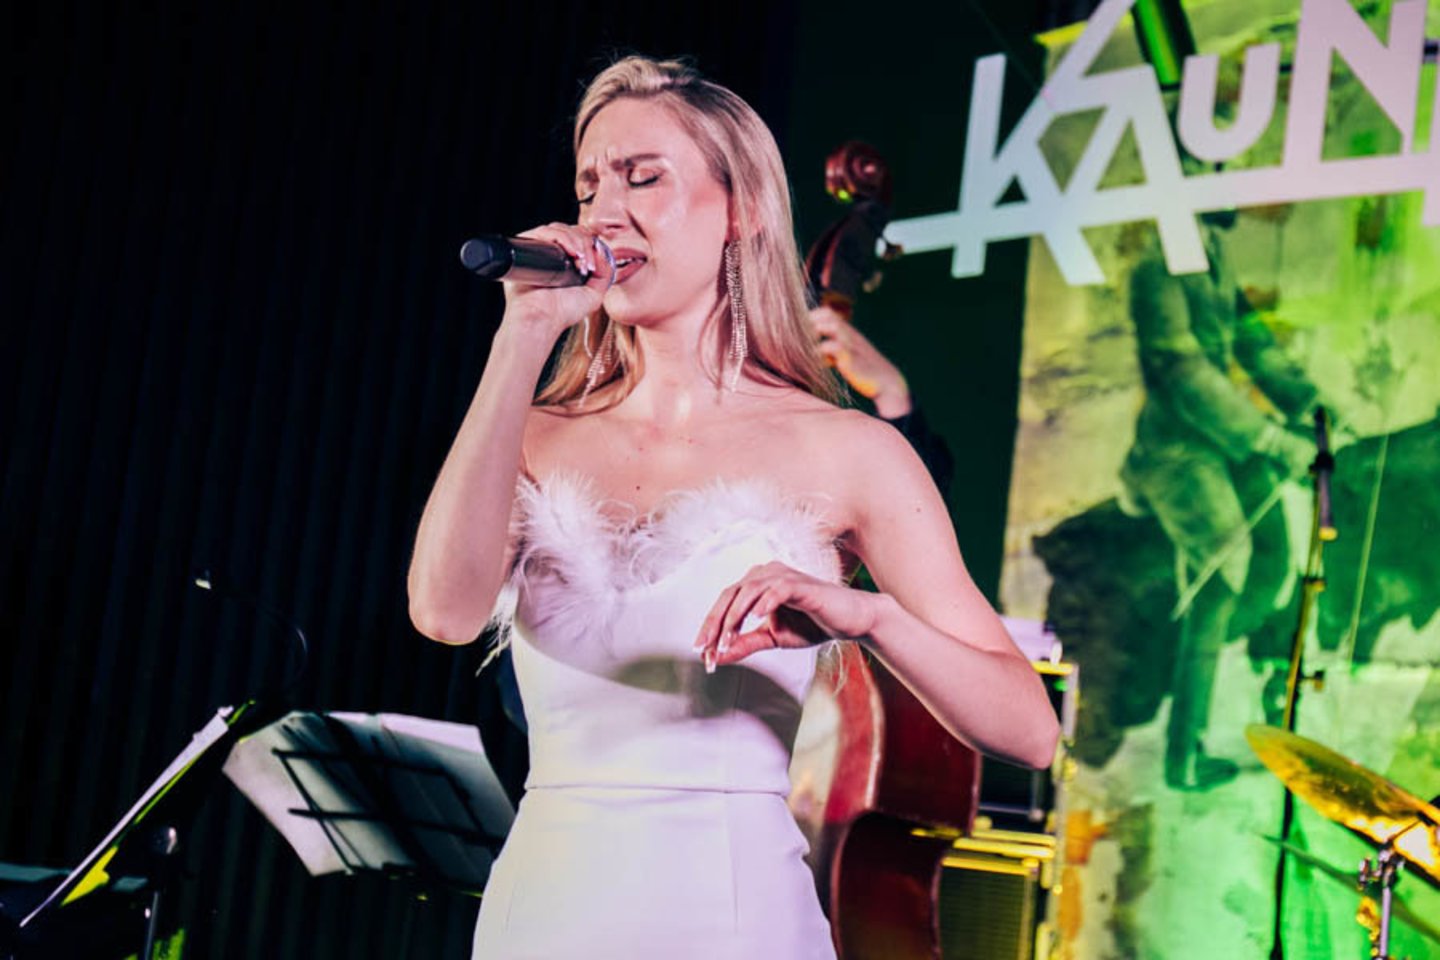 „Kaunas jazz“ festivalyje – duoklė Anapilin iškeliavusiai Indrei Jučaitei bei ryškiausios žvaigždės.<br> Organizatorių nuotr.